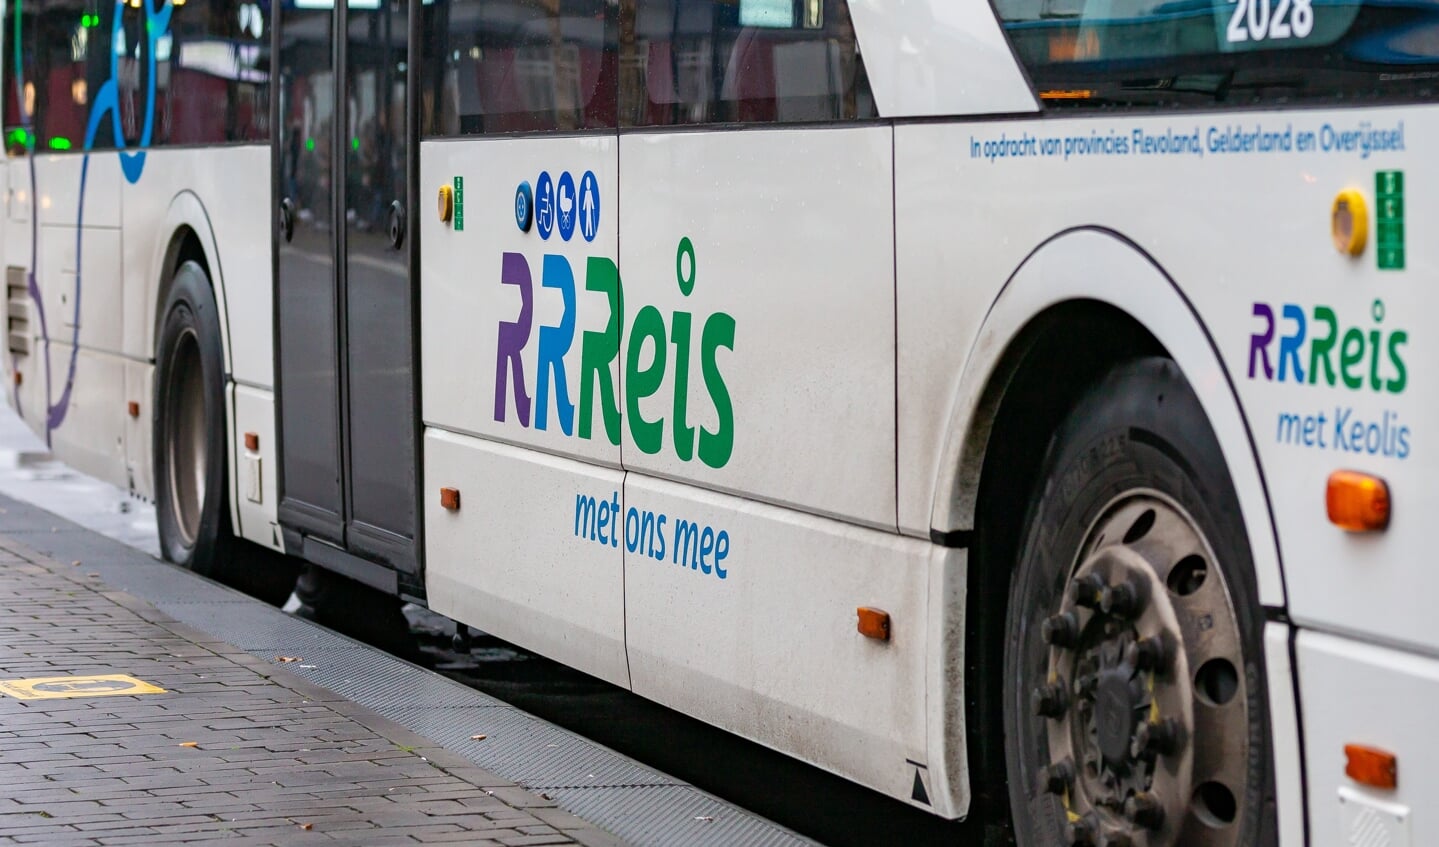 Busdienst Keolis van RRReis